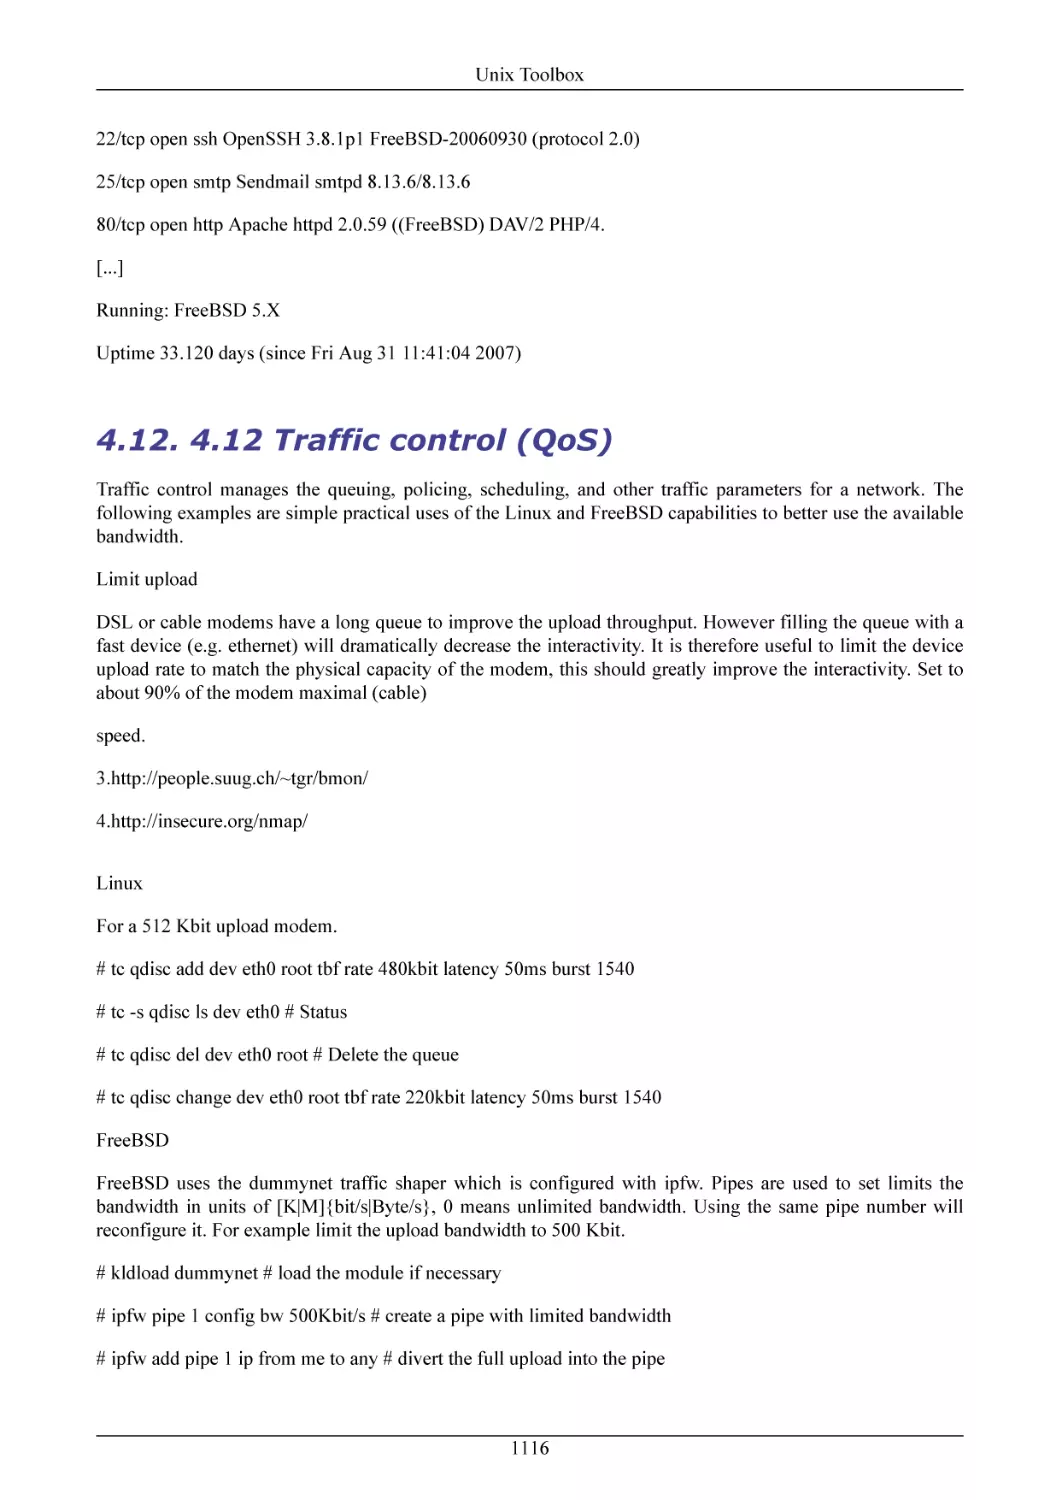 4.12 Traffic control (QoS)